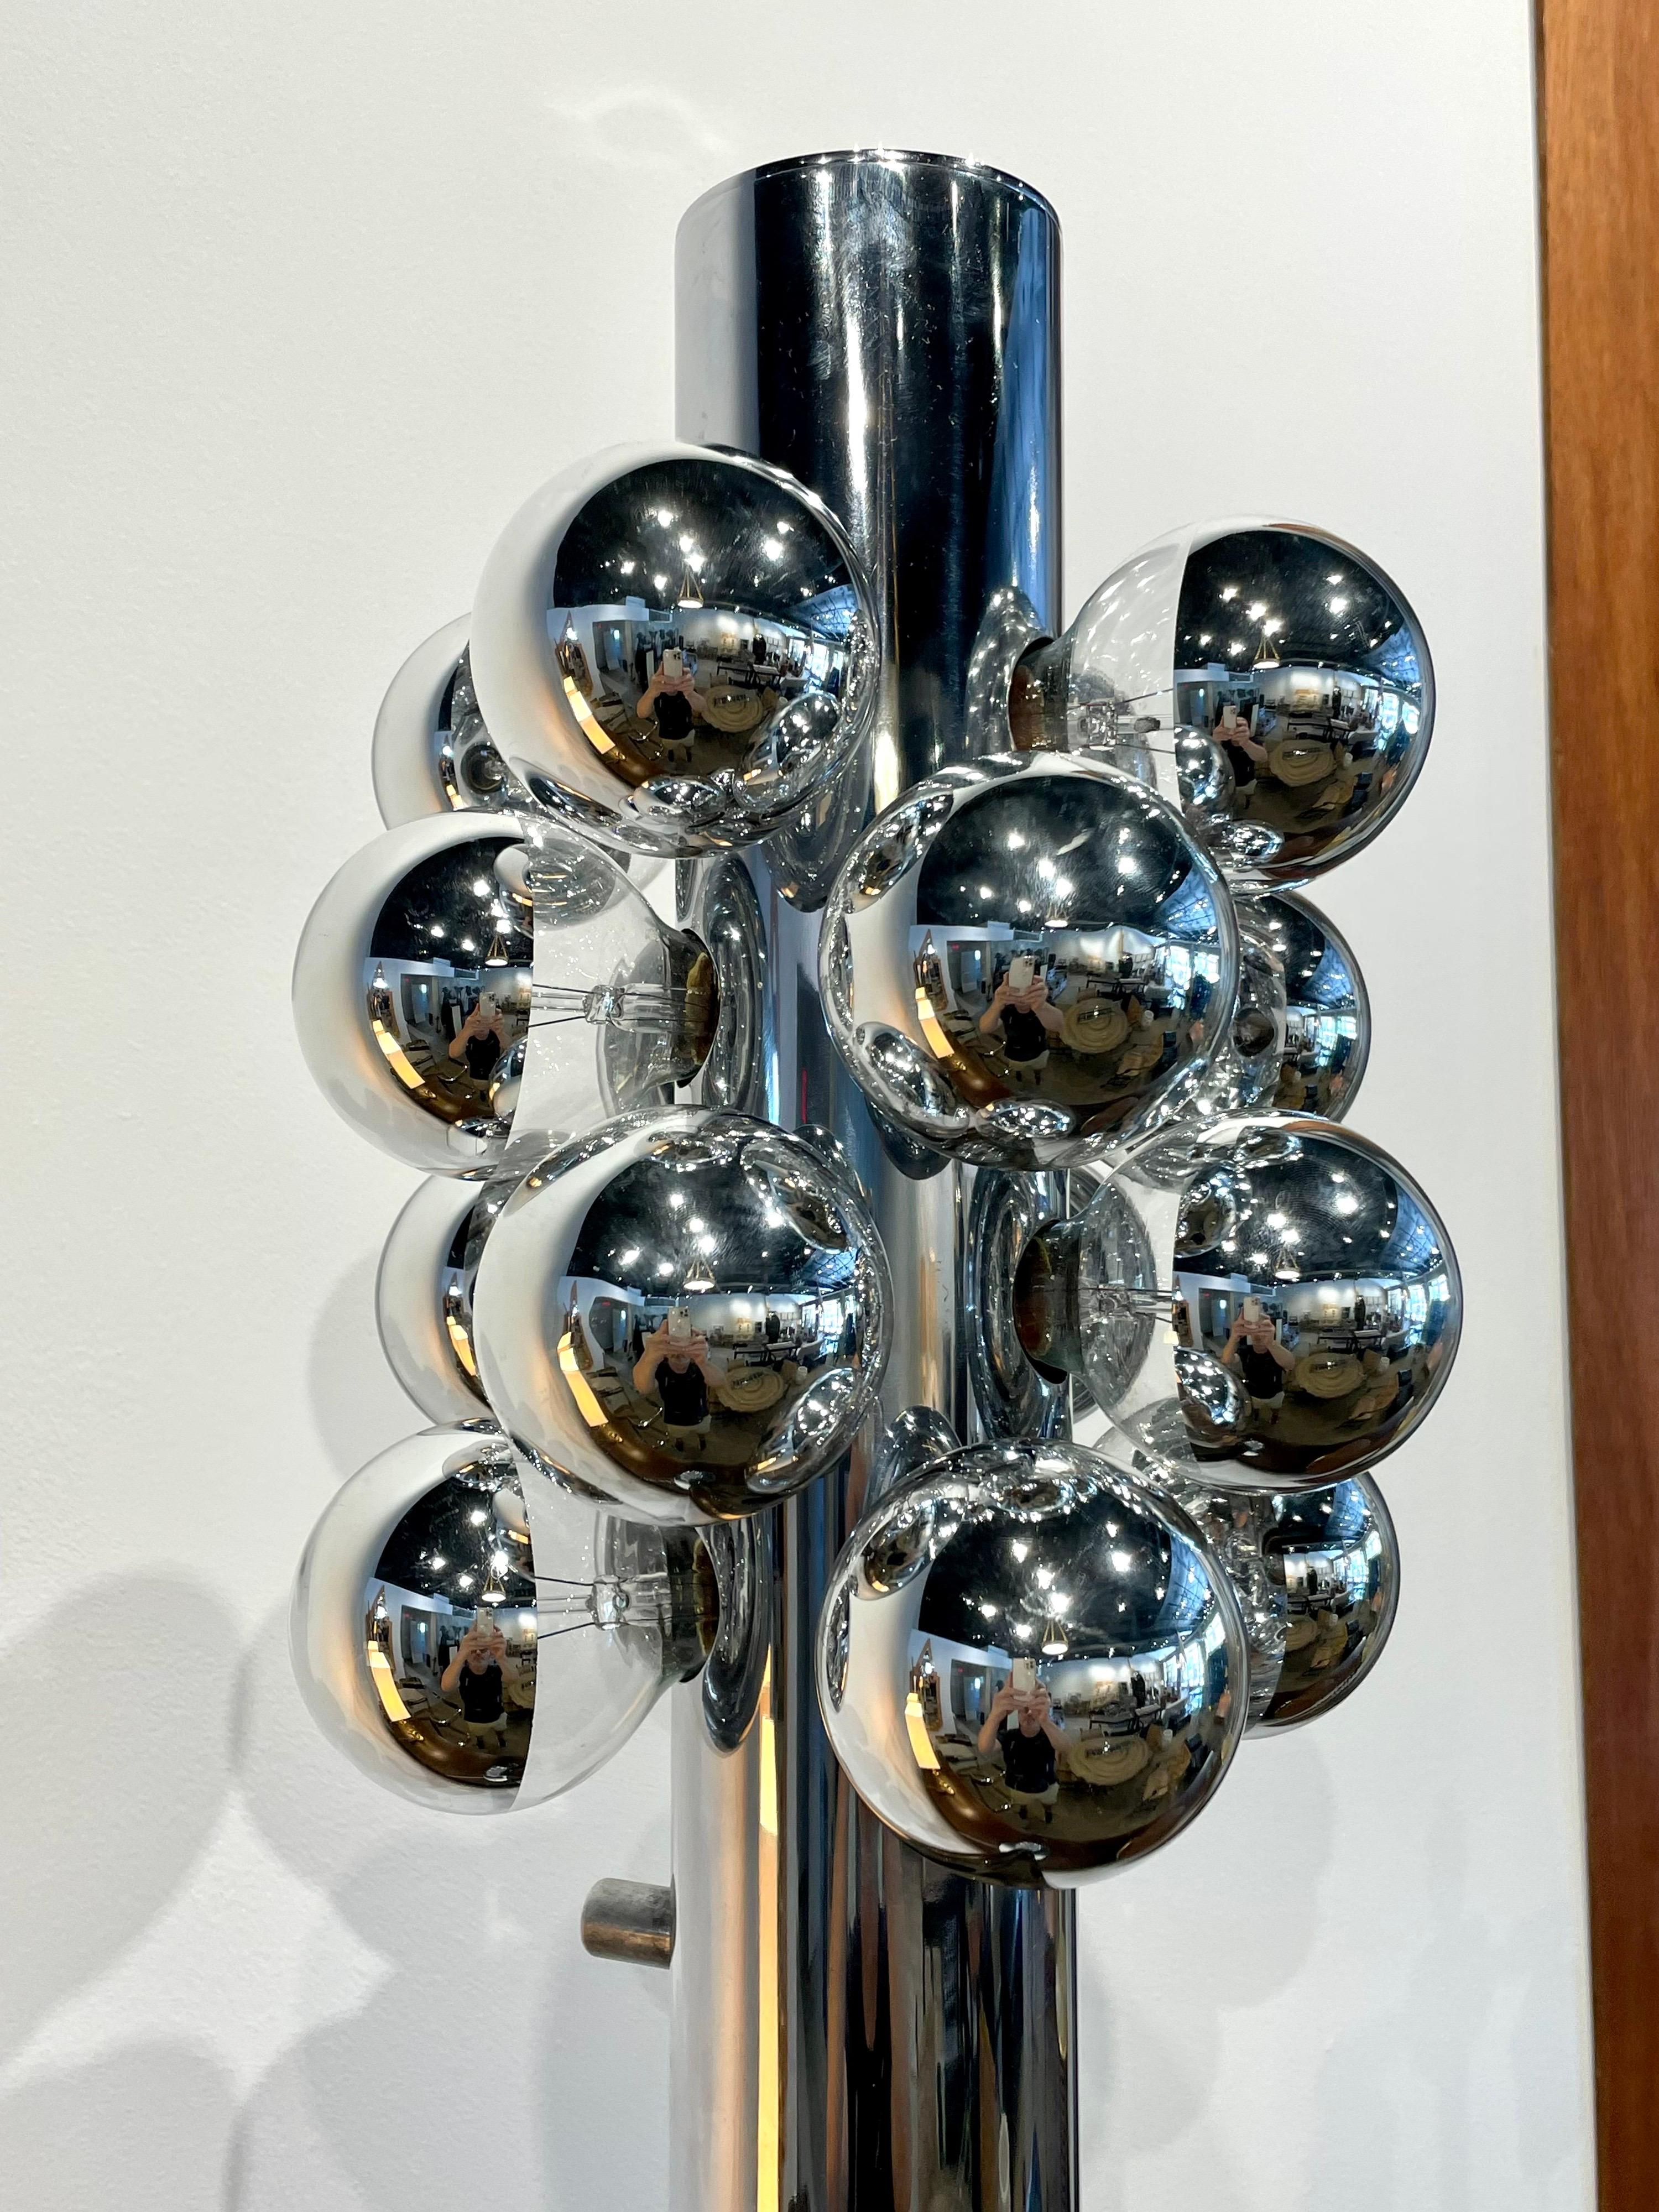 Die italienische Stehleuchte aus verchromtem Stahl ist eine originelle dekorative Lampe, die von Goffredo Reggiani in den 1970er Jahren entworfen wurde. Beleuchtet von einer Gruppe verchromter Glühbirnen, ist dies eine wunderbare, stilvolle Lampe.